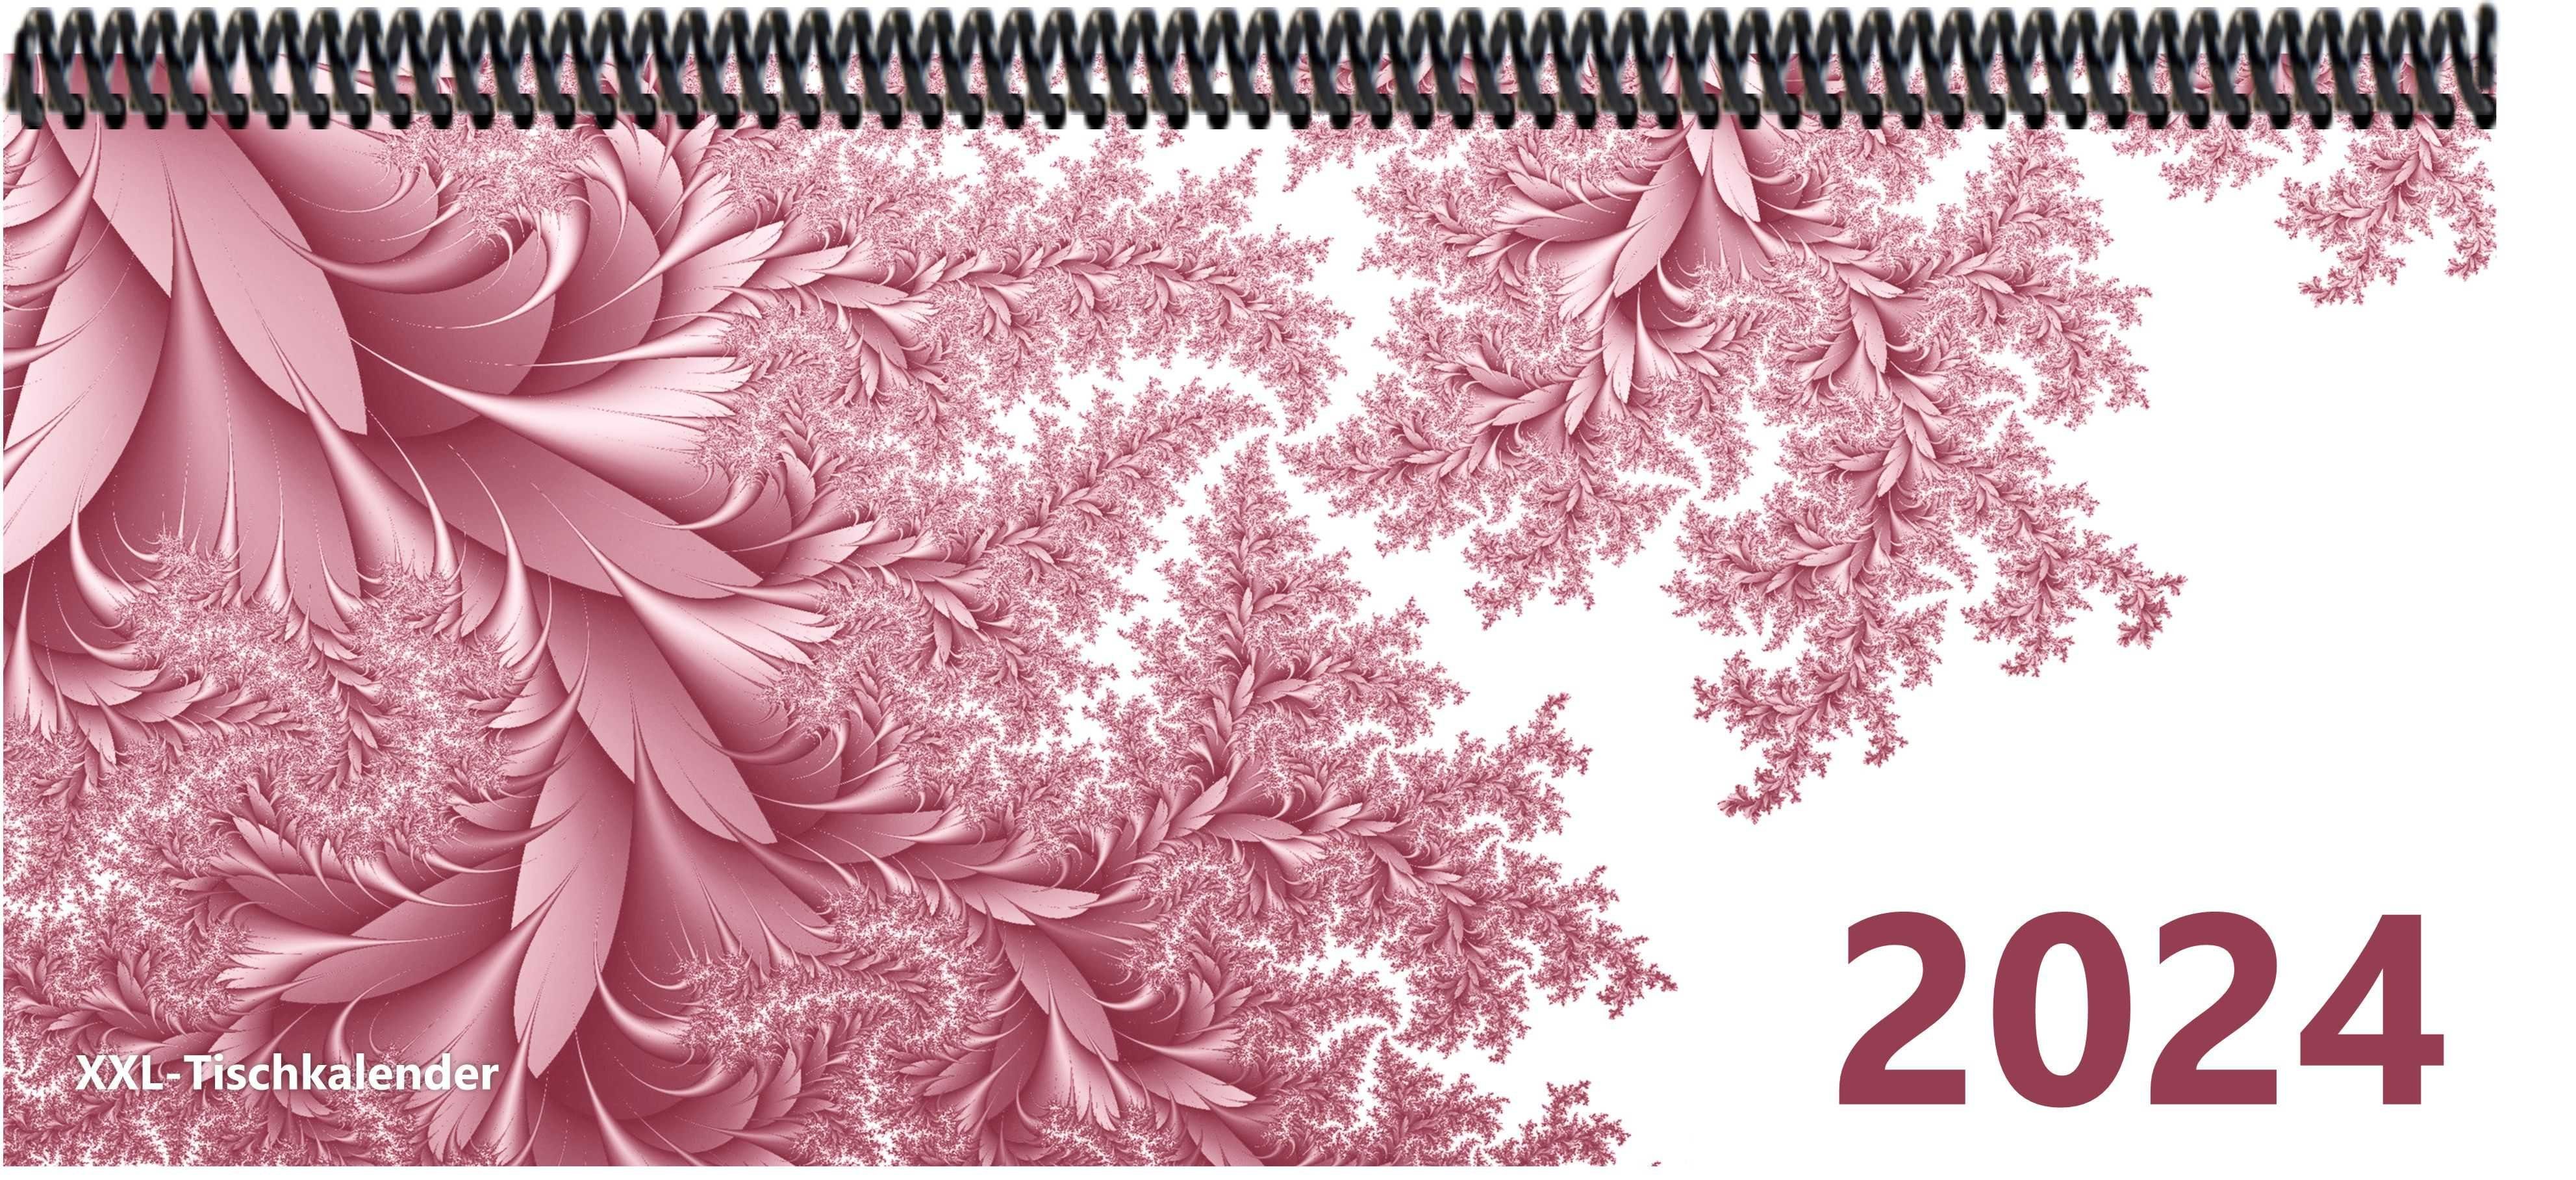 E&Z Verlag Gmbh Schreibtischkalender Bunt - Kalender XXL 2024 mit dem Muster Blätter rosa